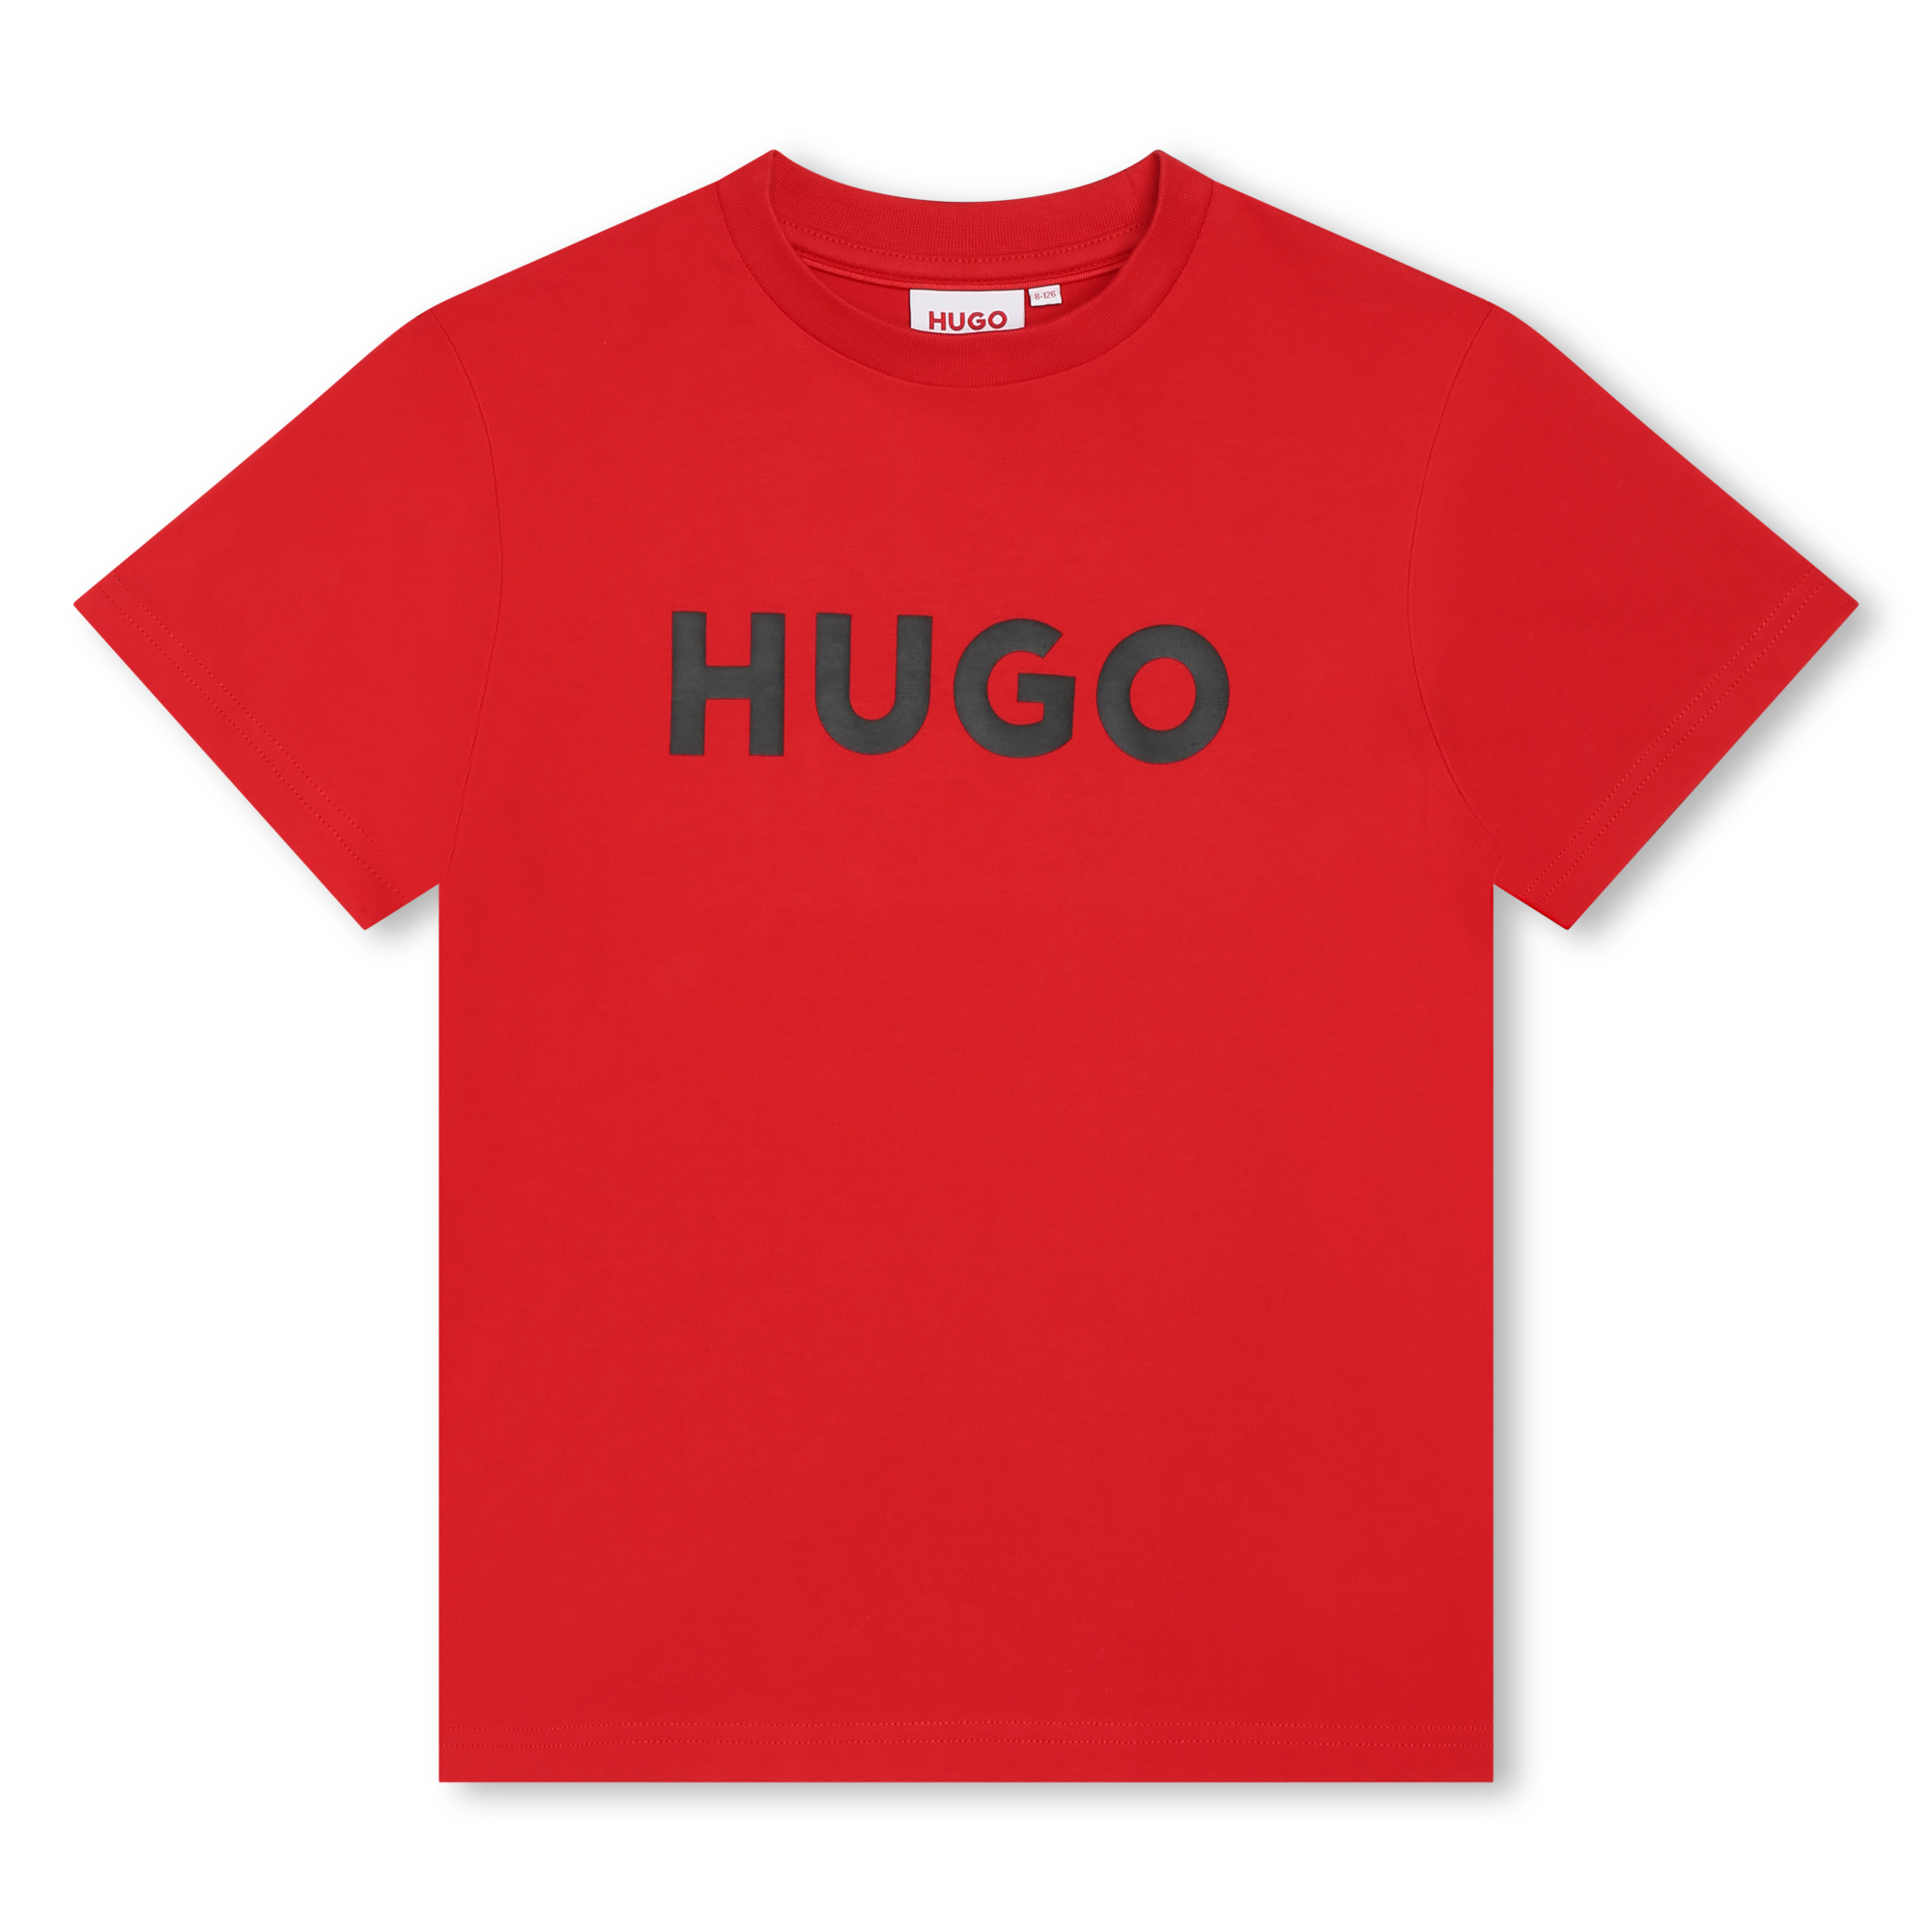 Zweifarbiges Baumwoll-Shirt HUGO Für JUNGE